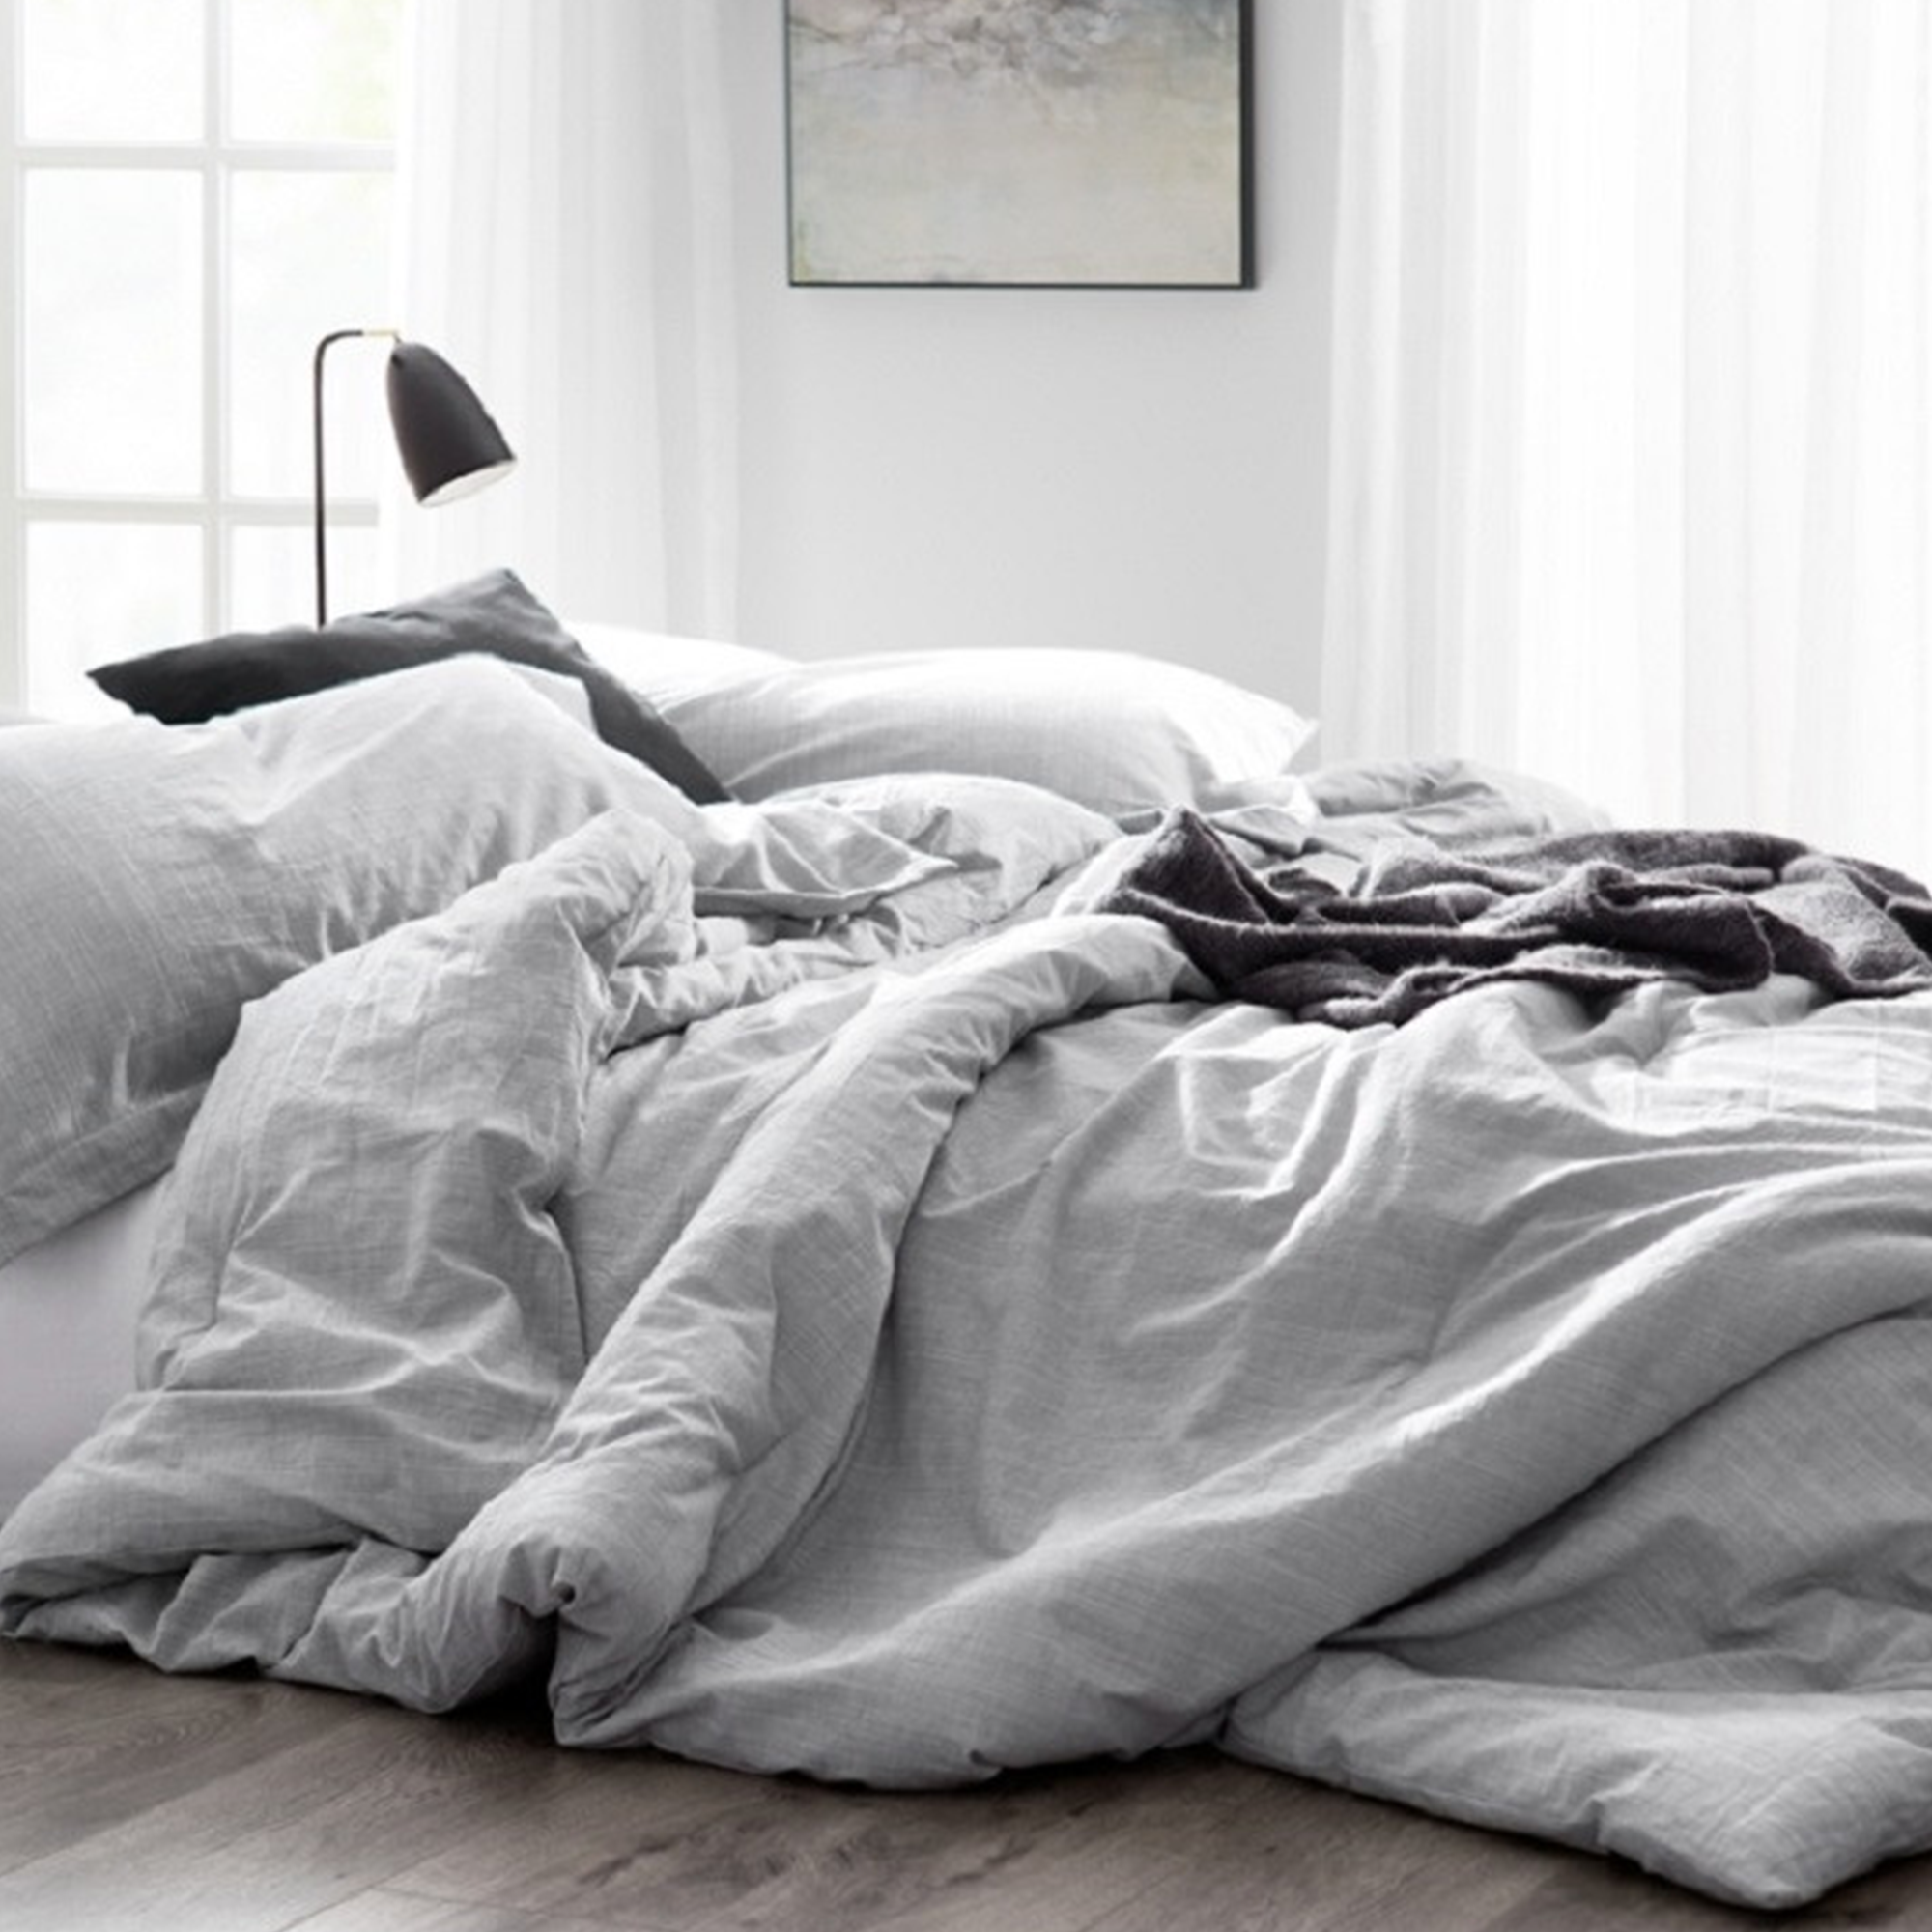 Одеяло на кровати. Одеяло и подушка. Красивое одеяло. Одеяло серое. Ютубе постель